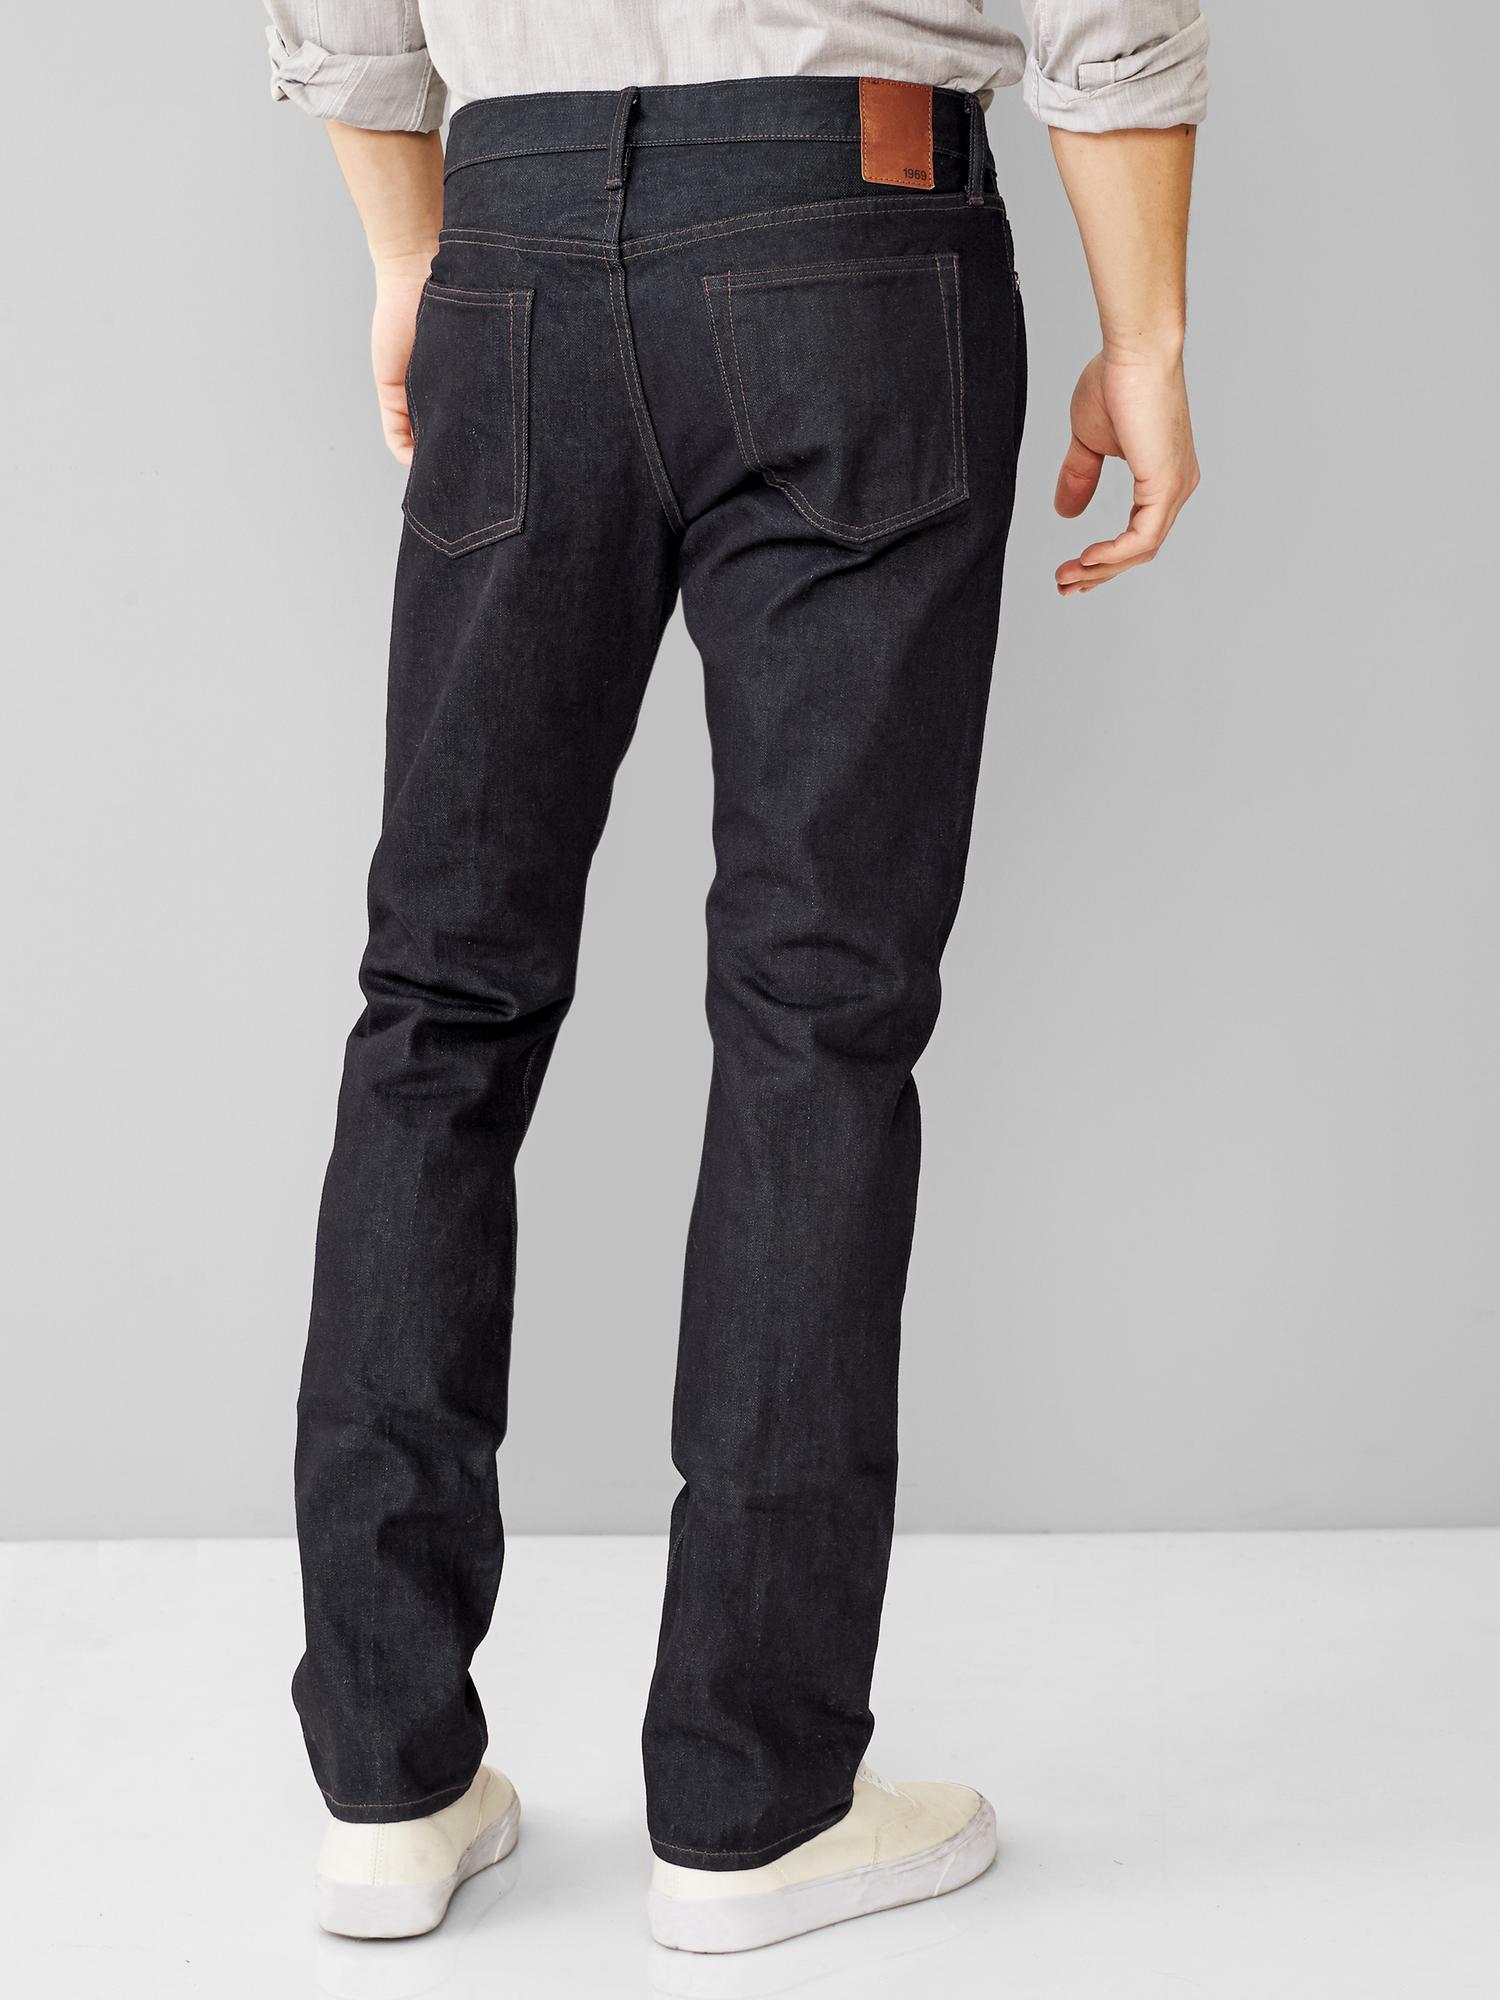 GAP Mens Soft Wear Skinny Fit Jeans, Resin Rinse 063, 30W x 30L US